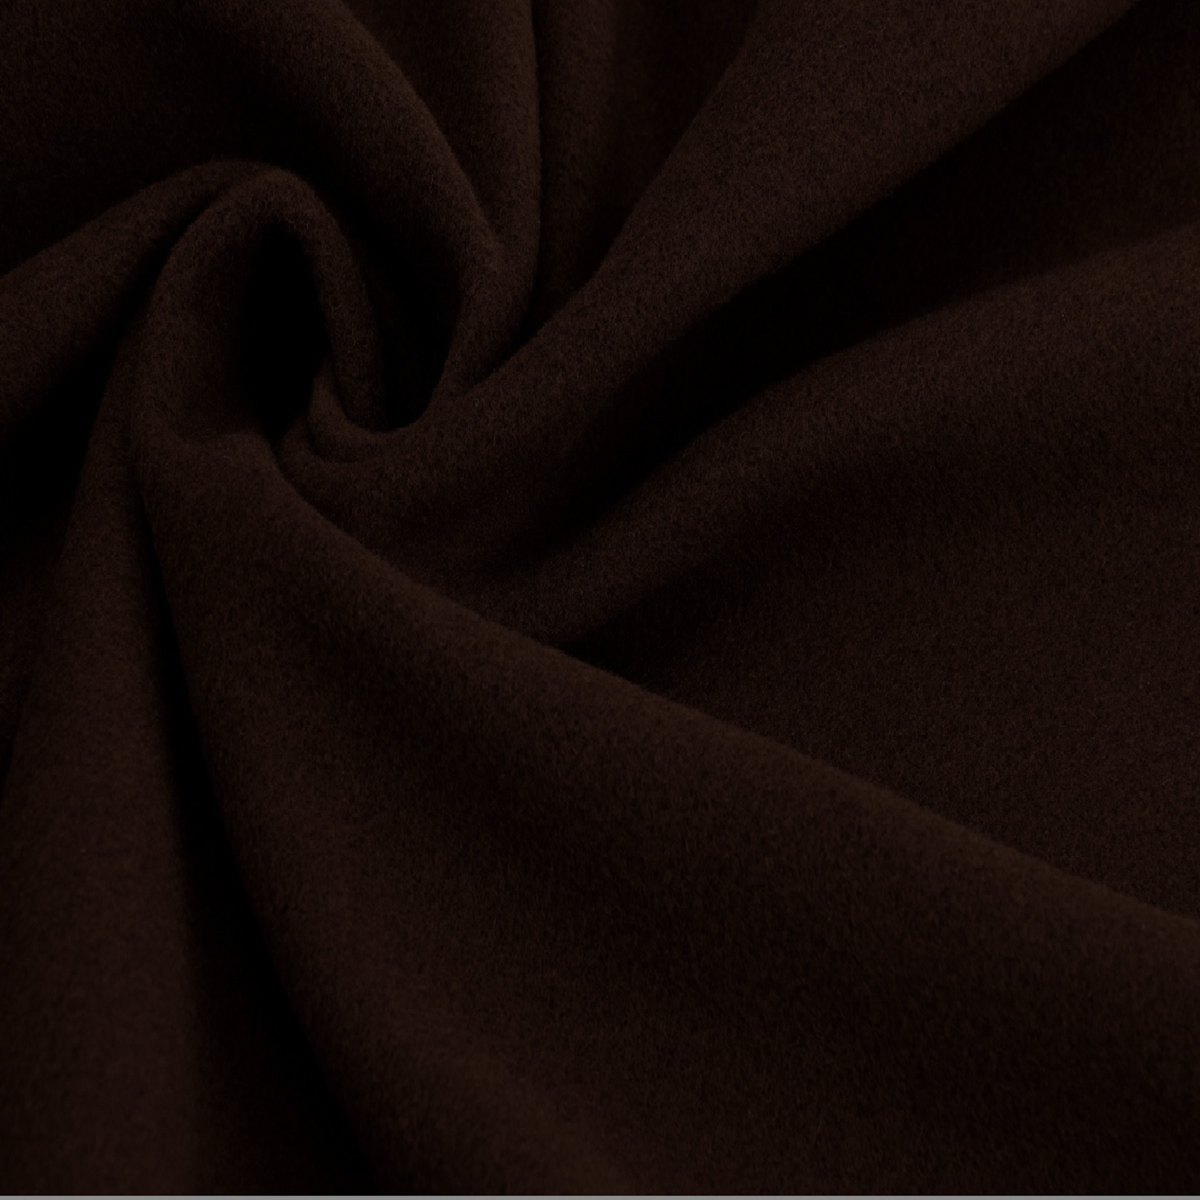 Coat fabric, black brown